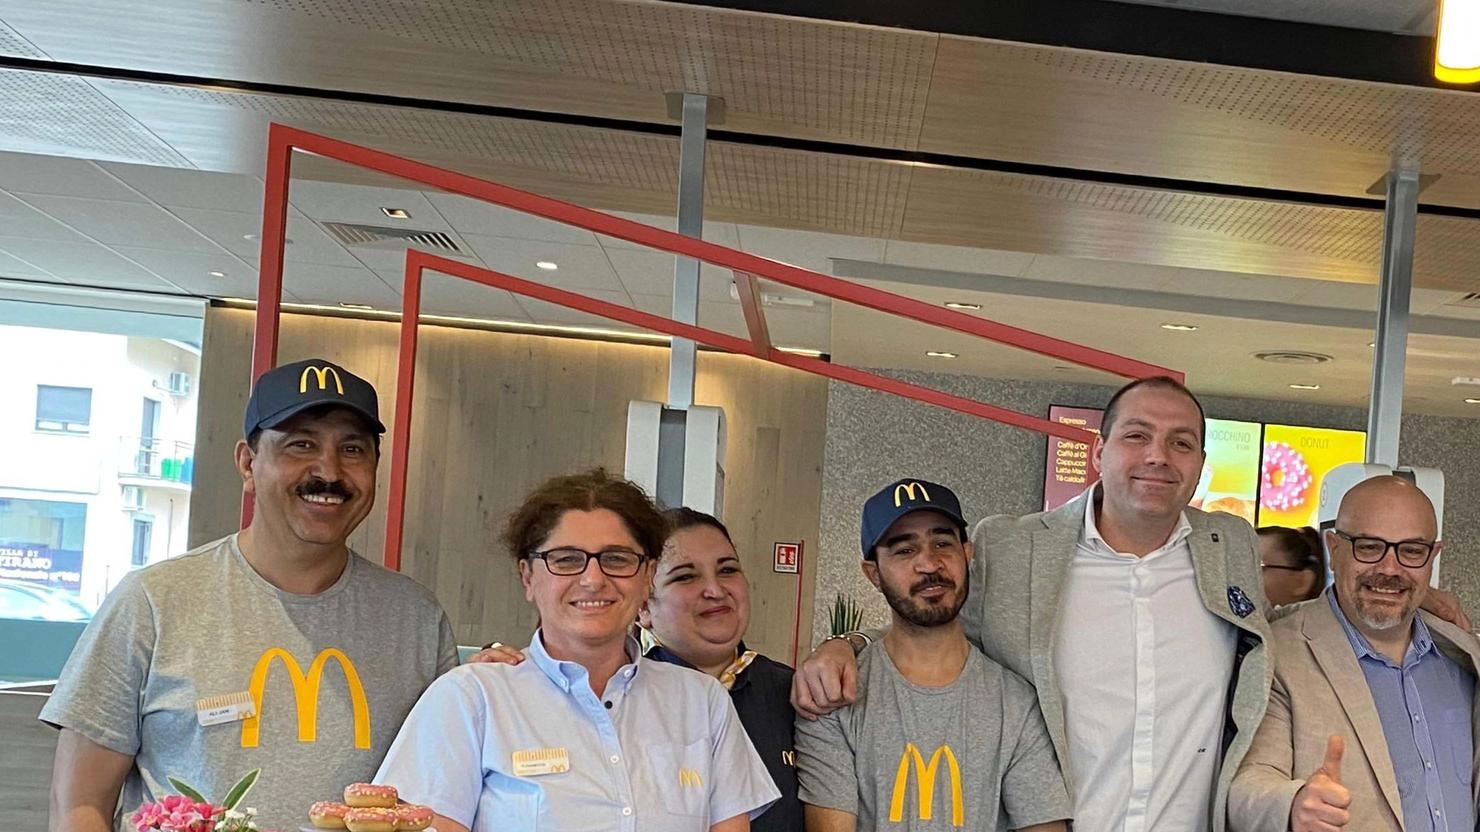 Inaugurato nuovo ristorante McDonald’s a Villa di Tirano con 33 dipendenti, di cui l’80% donne e provenienti da 18 nazionalità diverse. Dotato di servizi innovativi e partnership con Fondazione Pro Valtellina.